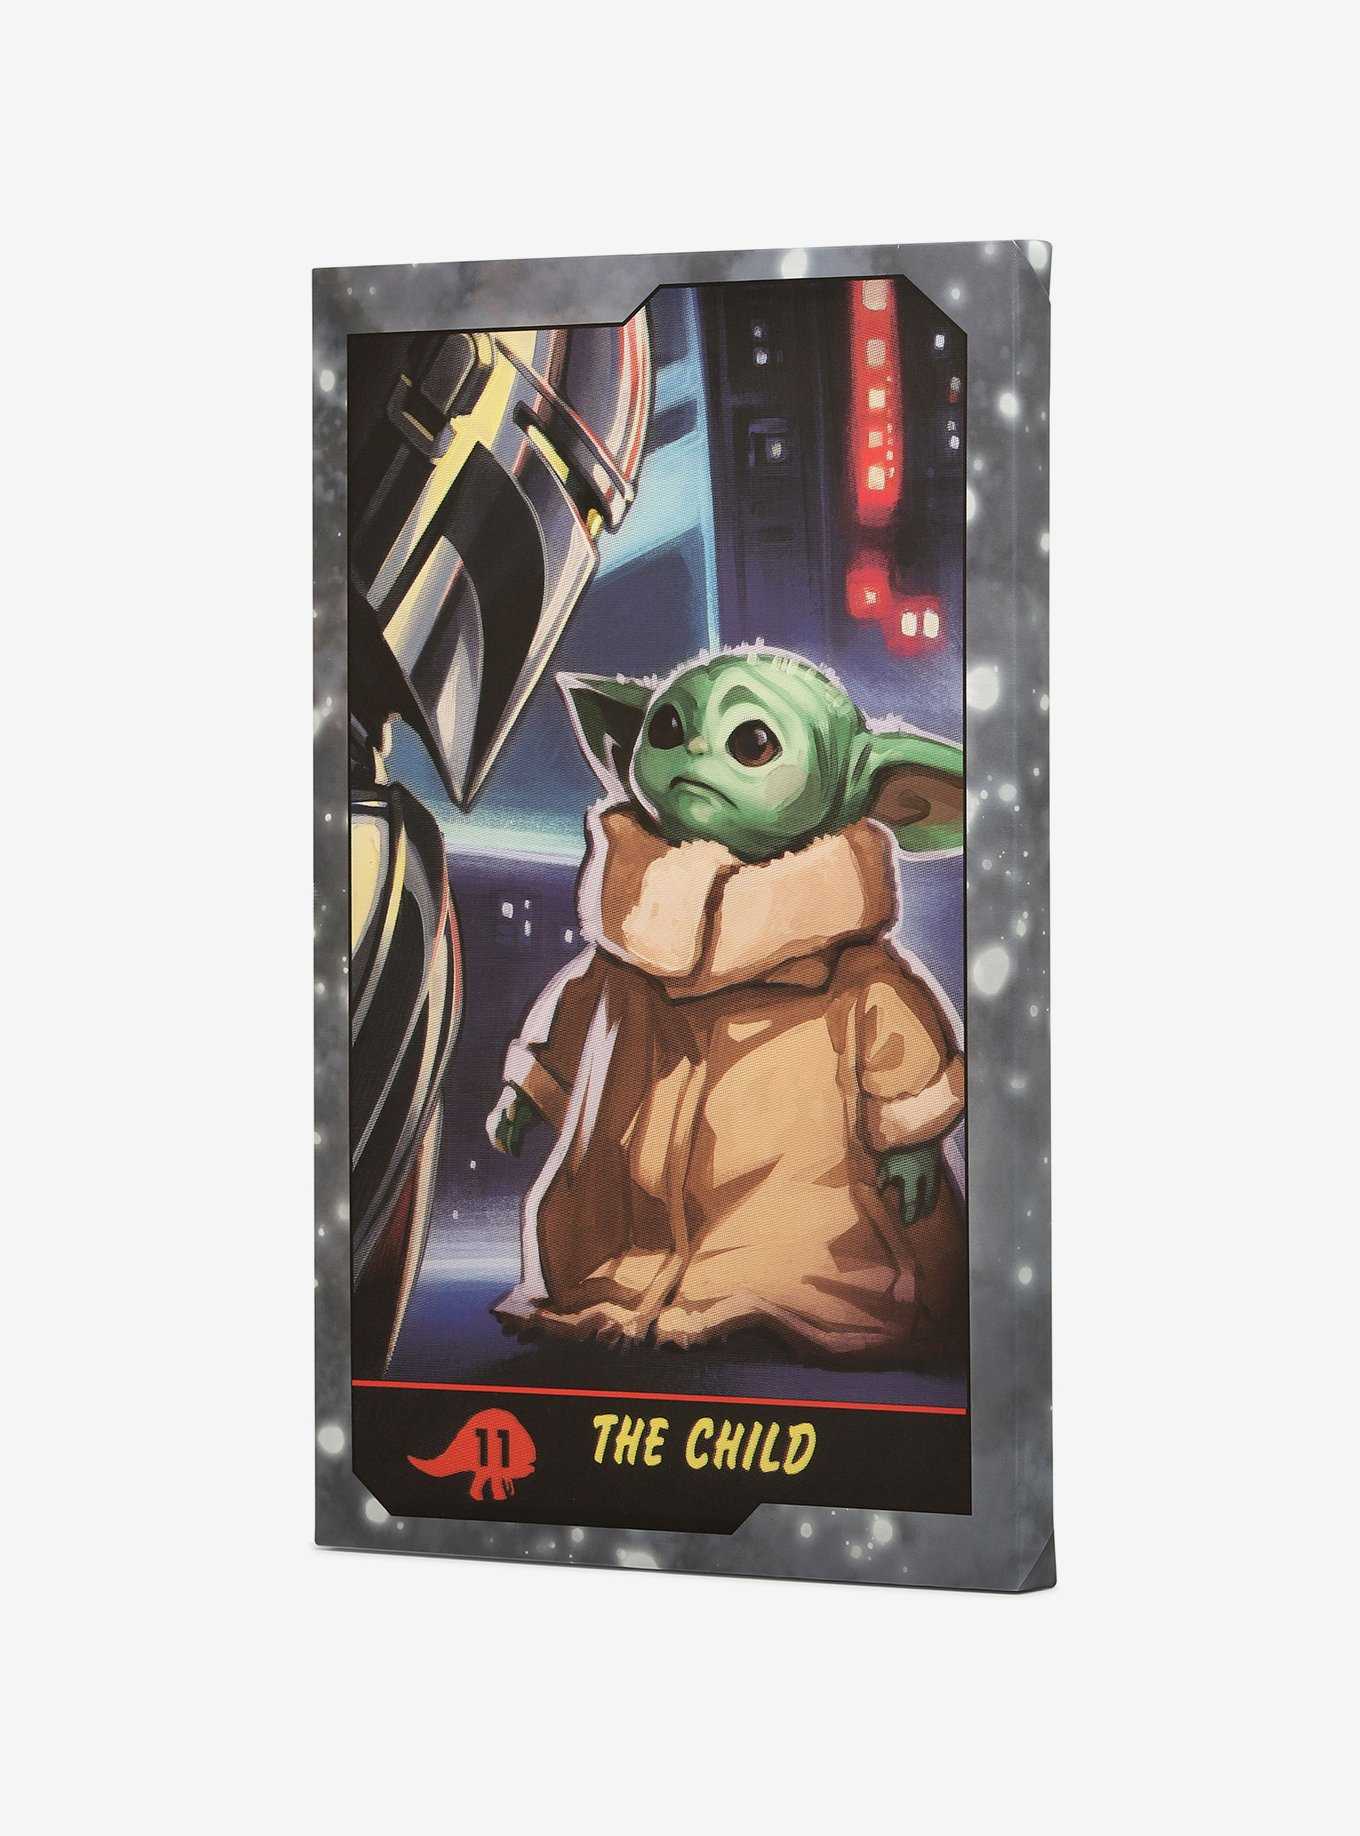 Star Wars The Mandalorian Baby Yoda Playing Card Canvas Wall Decor, , hi-res